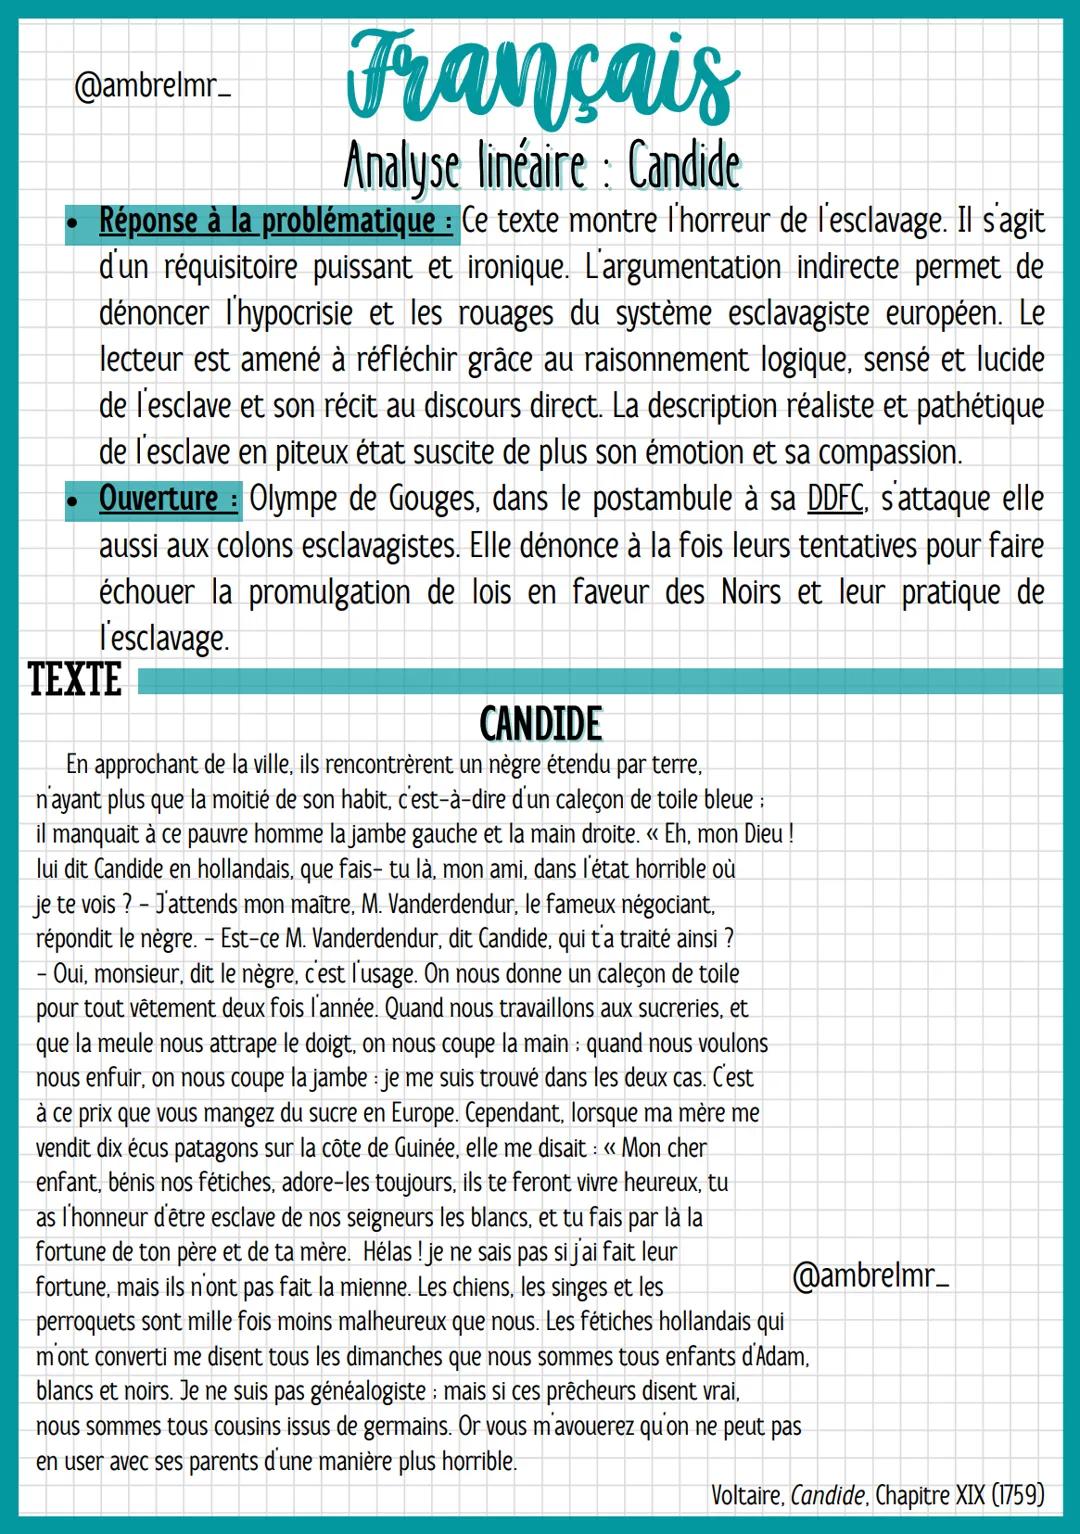 @ambrelmr_
INTRODUCTION
Français
Analyse linéaire: Candide
Présentation du texte :
→ Auteur : Voltaire est un auteur du XVIIIe siècle qui s'